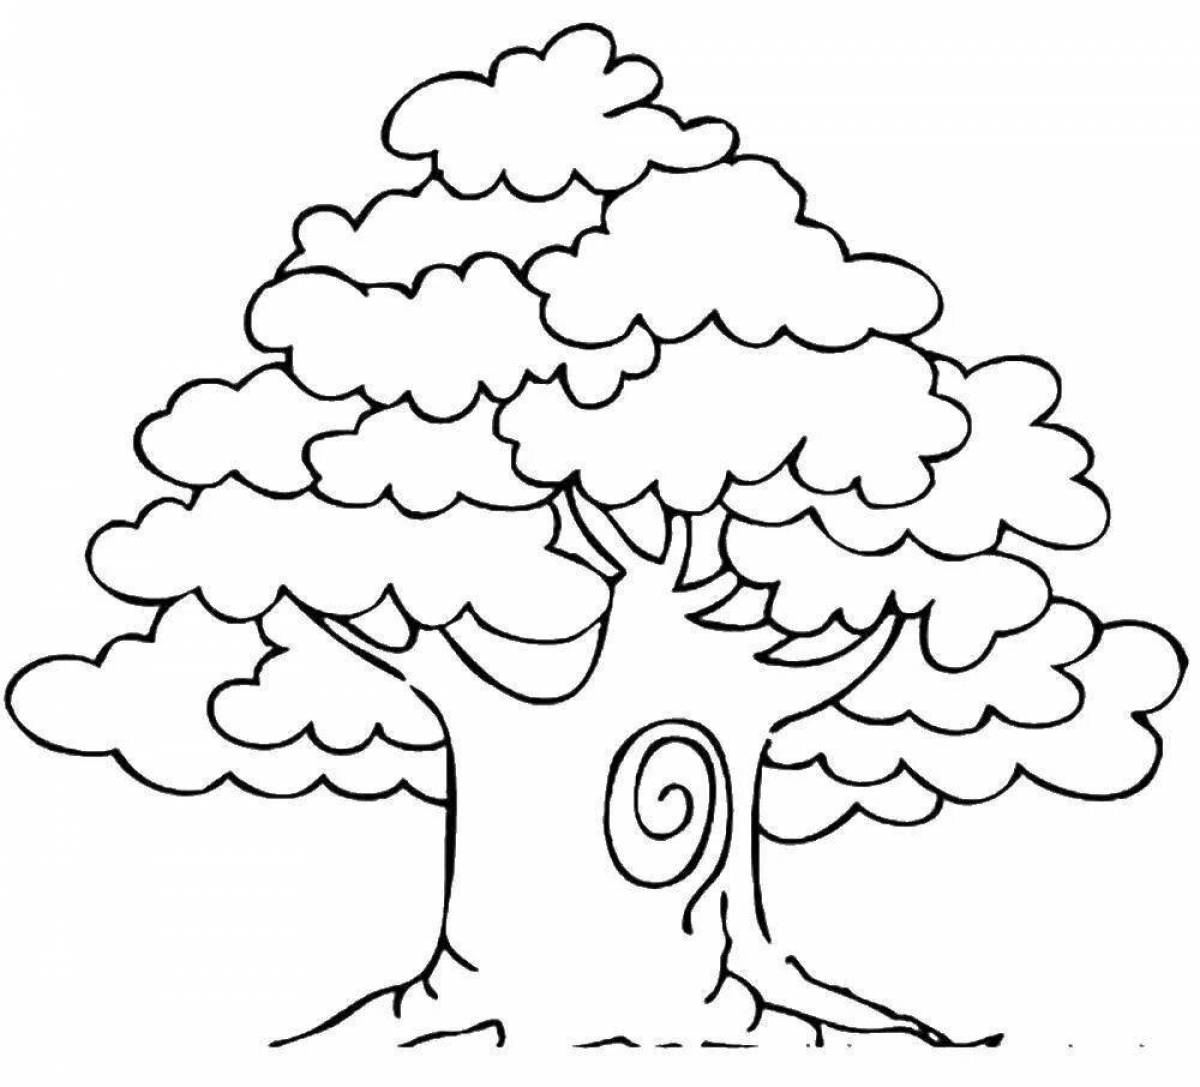 Скопировать дерево. Дерево раскраска. Дерево раскраска для детей. Дуб раскраска. Дерево дуб раскраска.